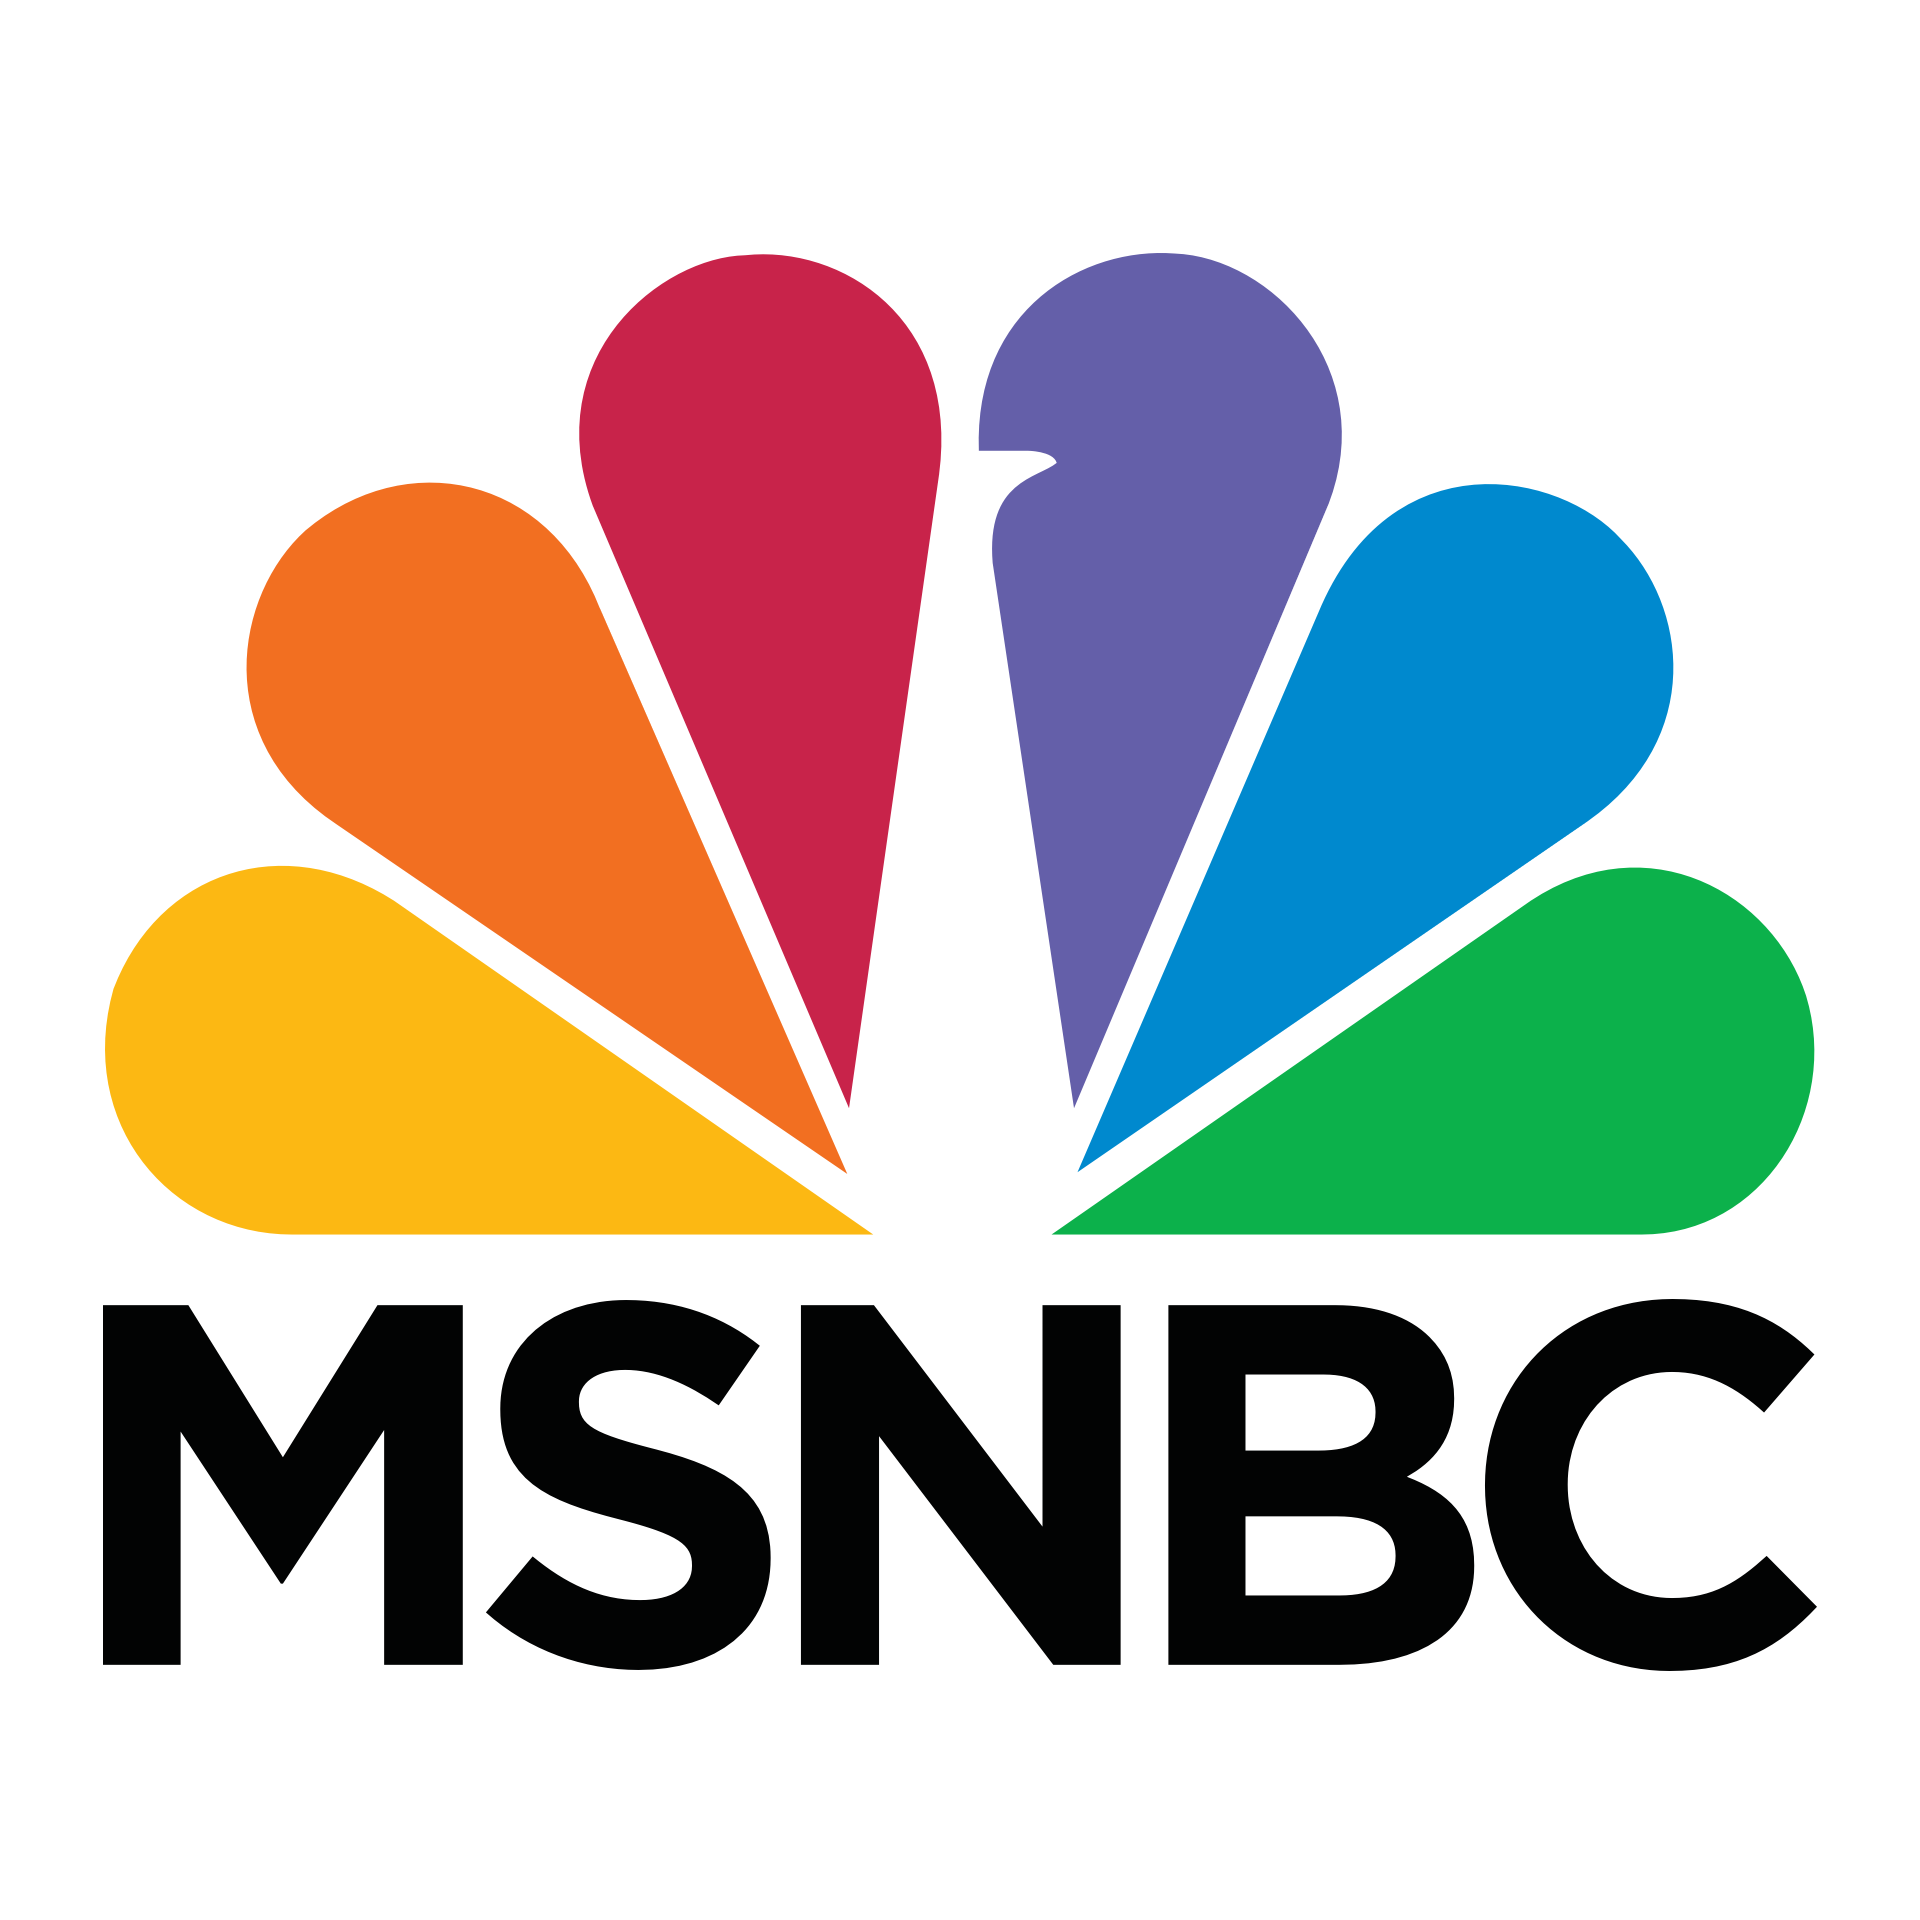 msnbc-logo-png--1920.png